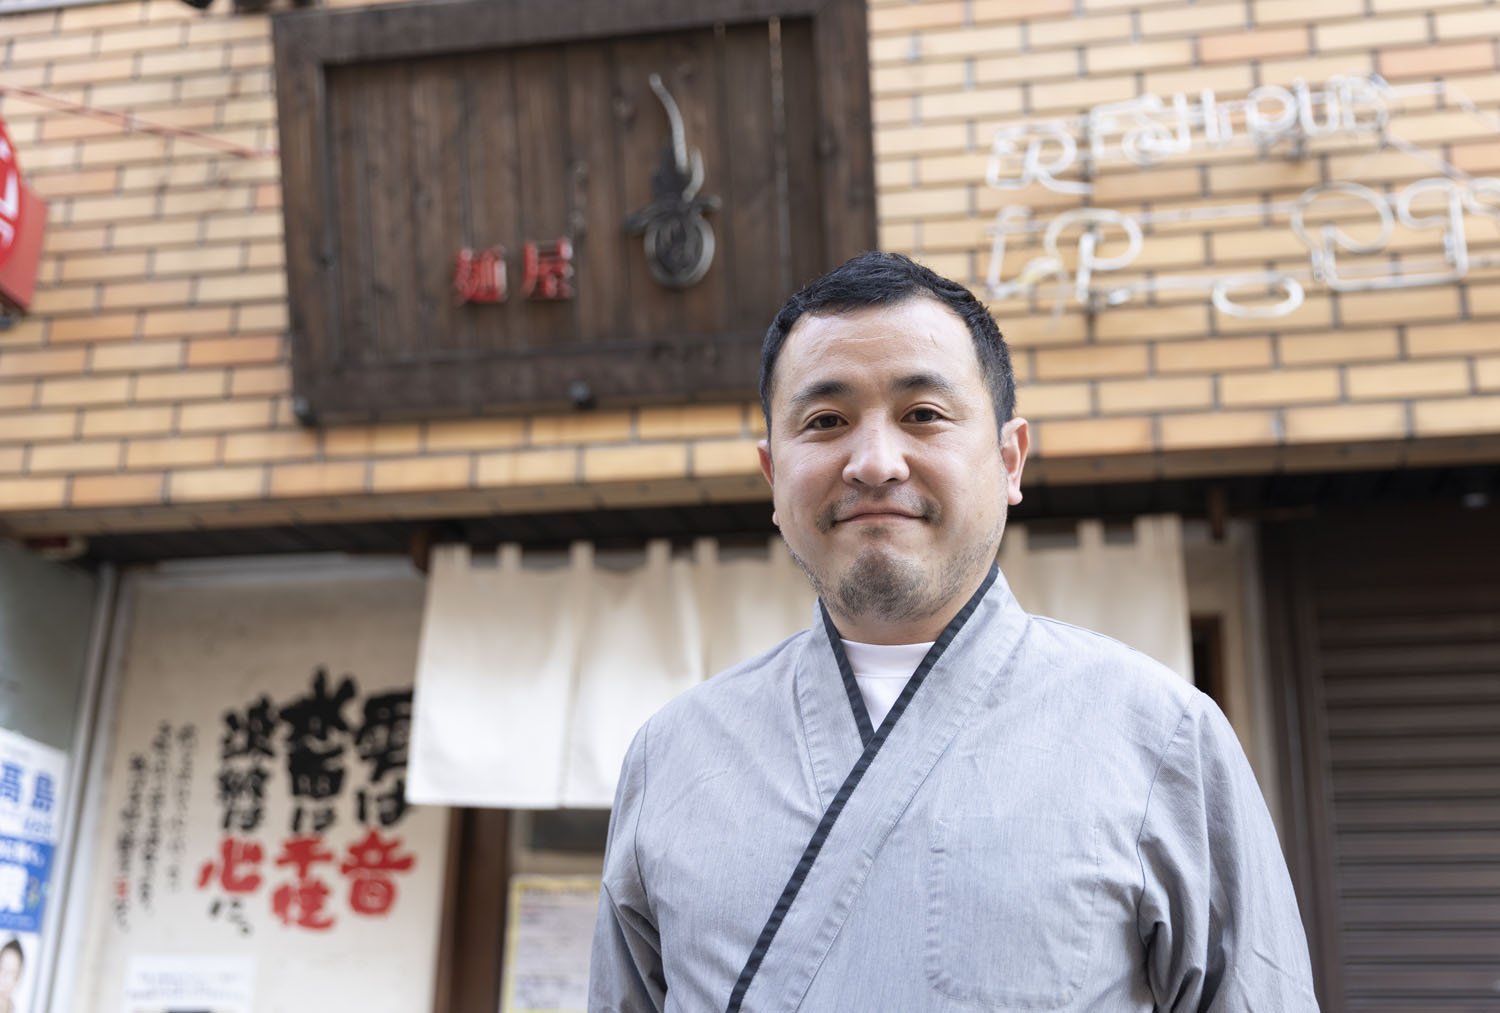 和食出身の原さん。当初は居酒屋を志していたが、人々の心を引き付けるラーメンのパワーに魅せられ、ラーメン店を開業した。